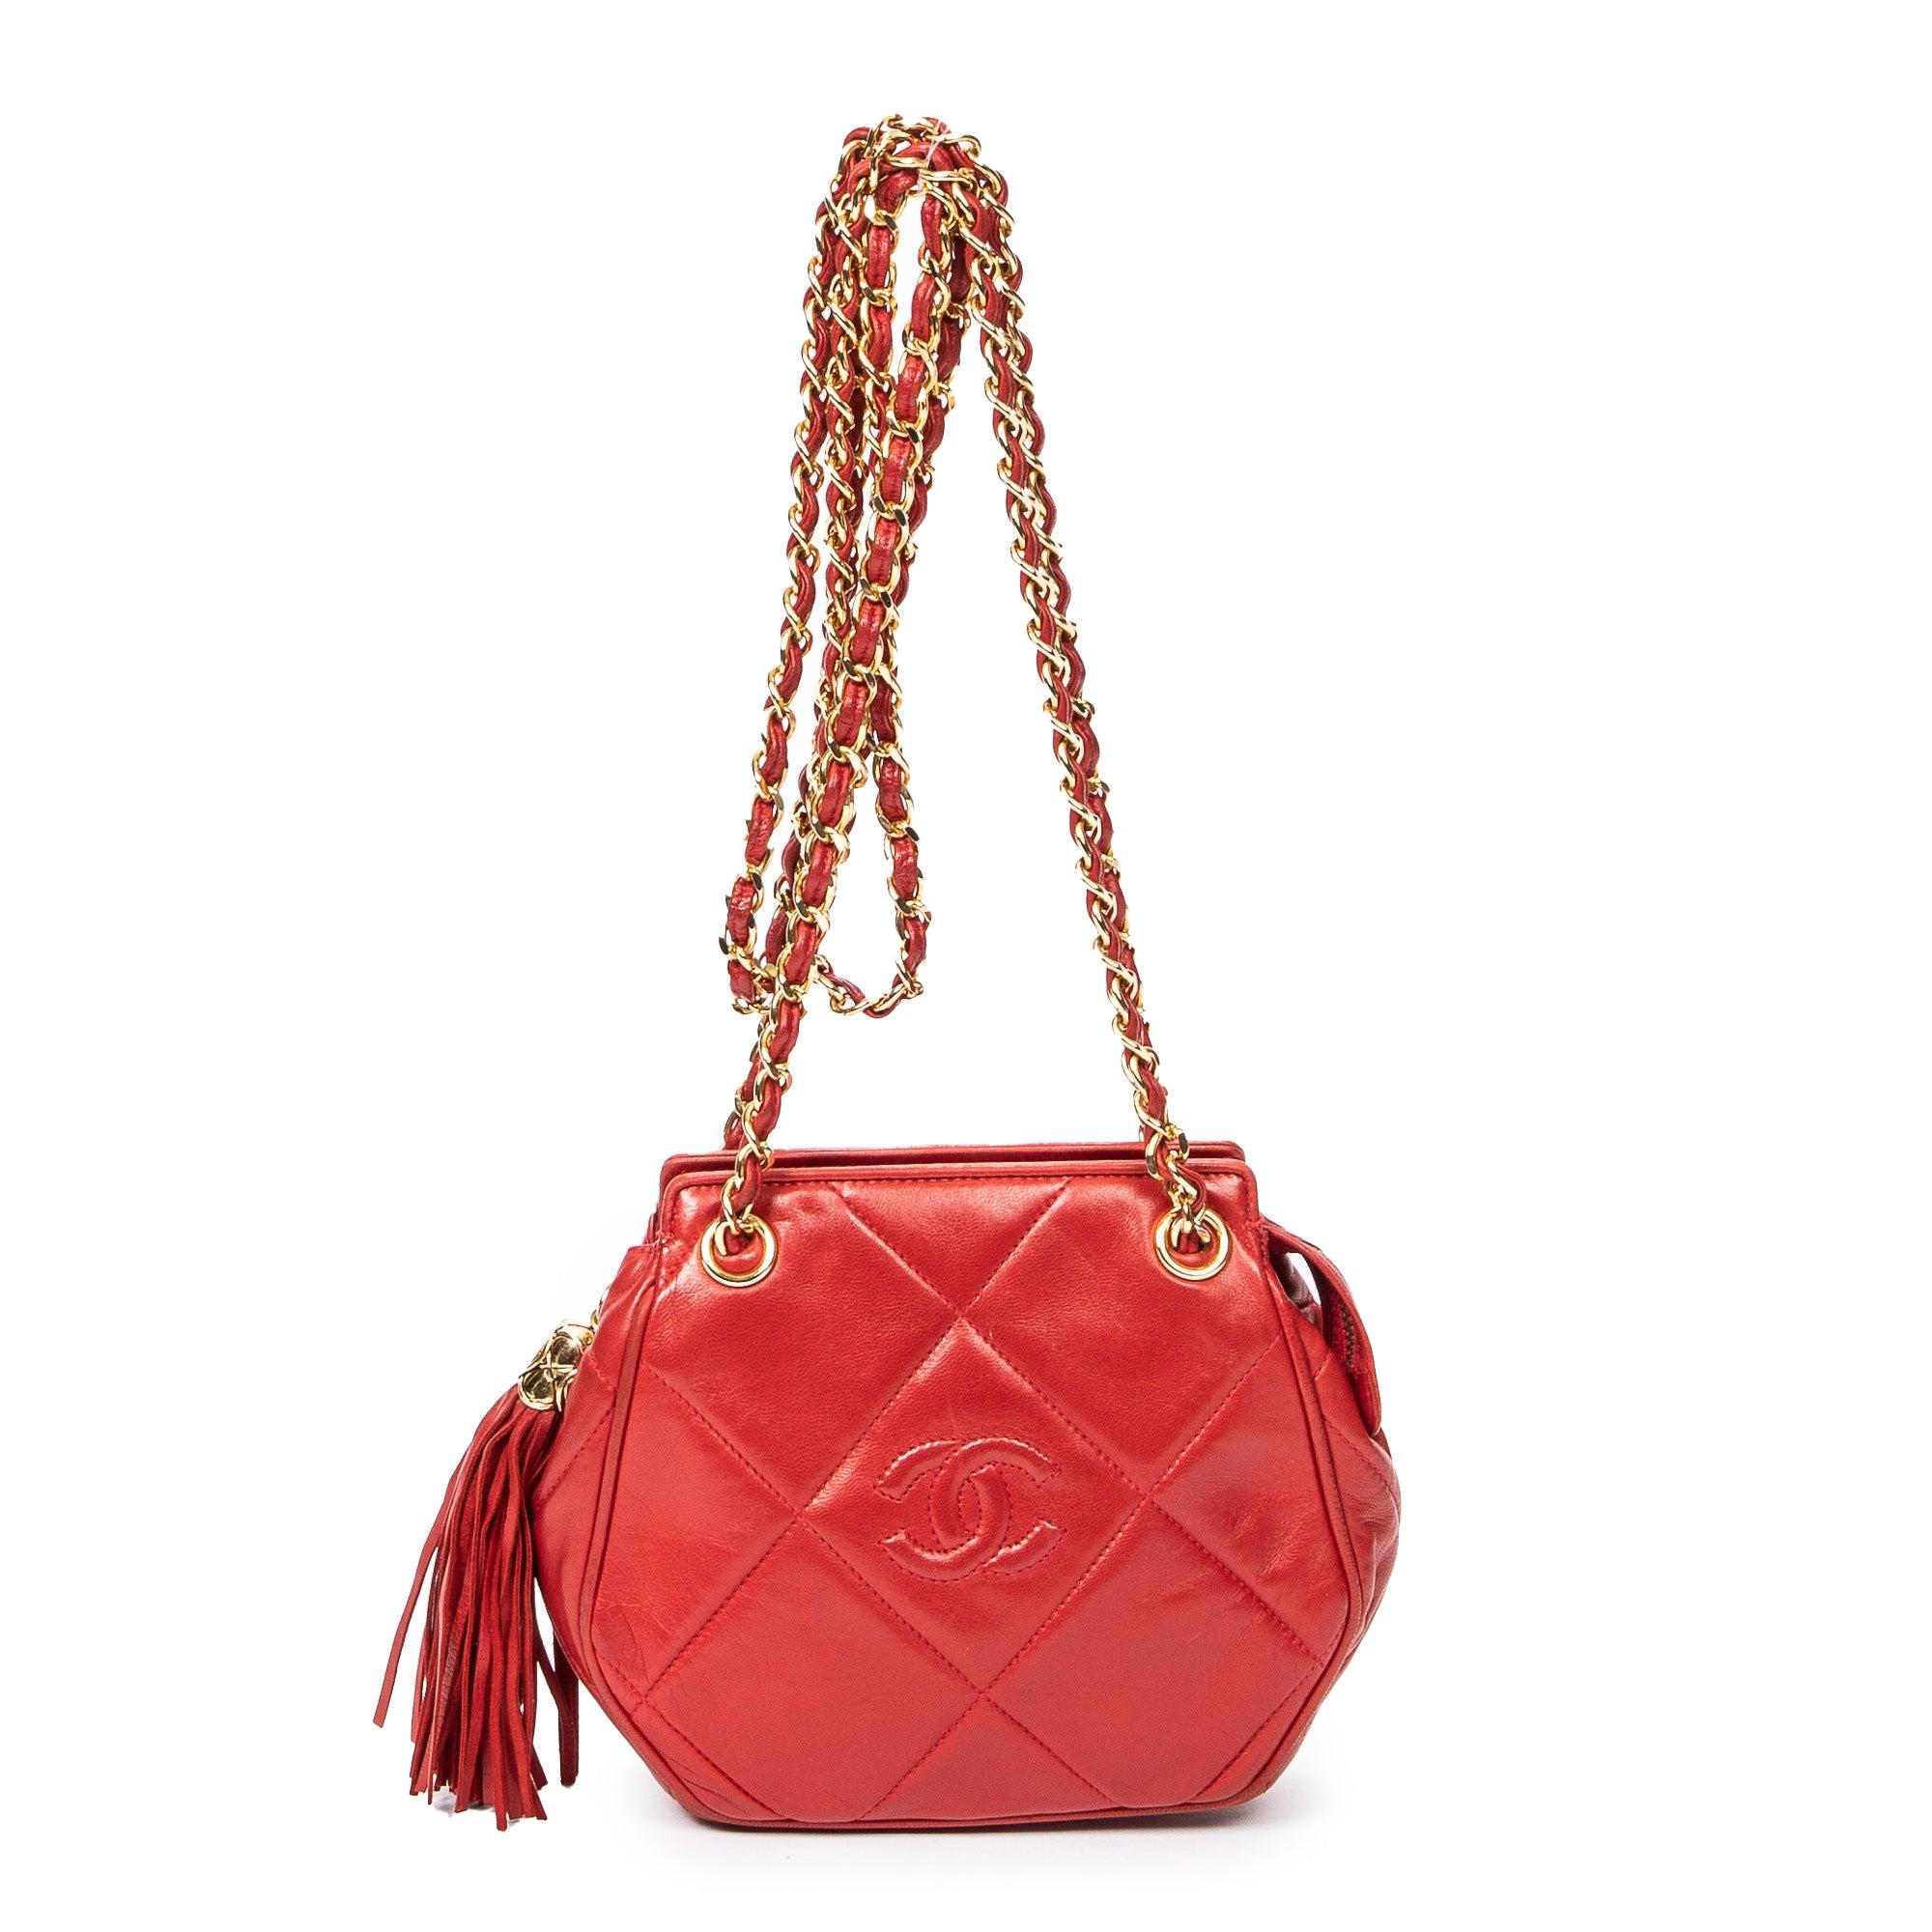 Chanel Vintage Tassel Bag in Red